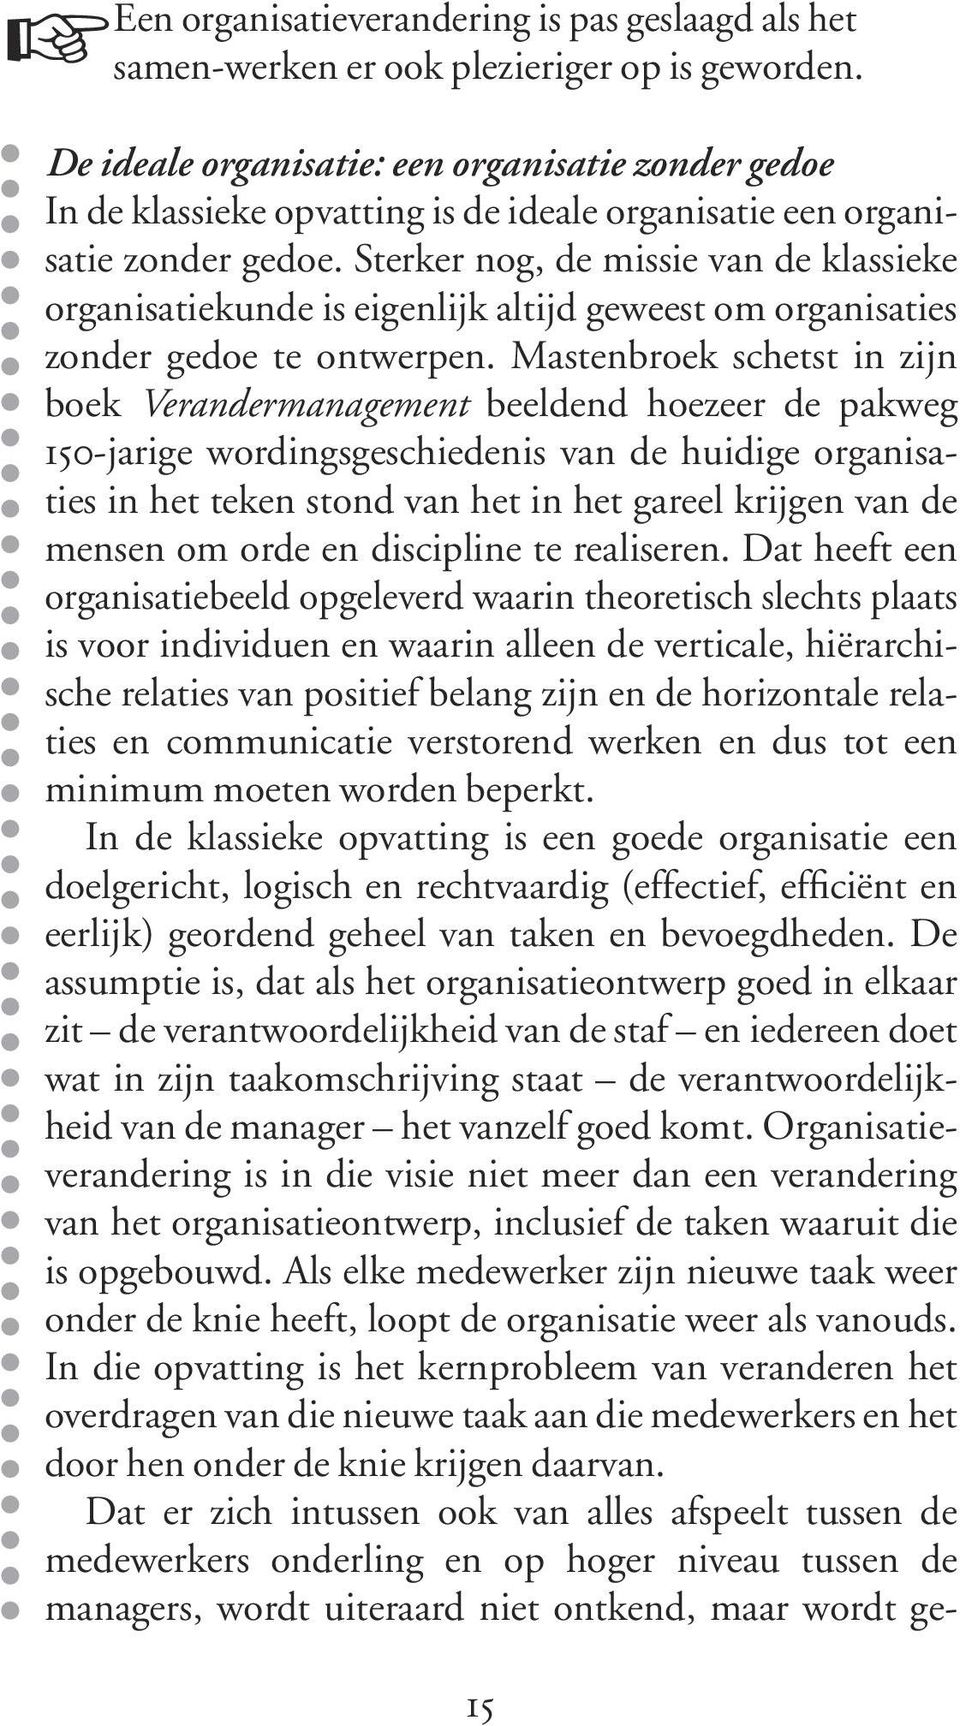 Sterker nog, de missie van de klassieke organisatiekunde is eigenlijk altijd geweest om organisaties zonder gedoe te ontwerpen.